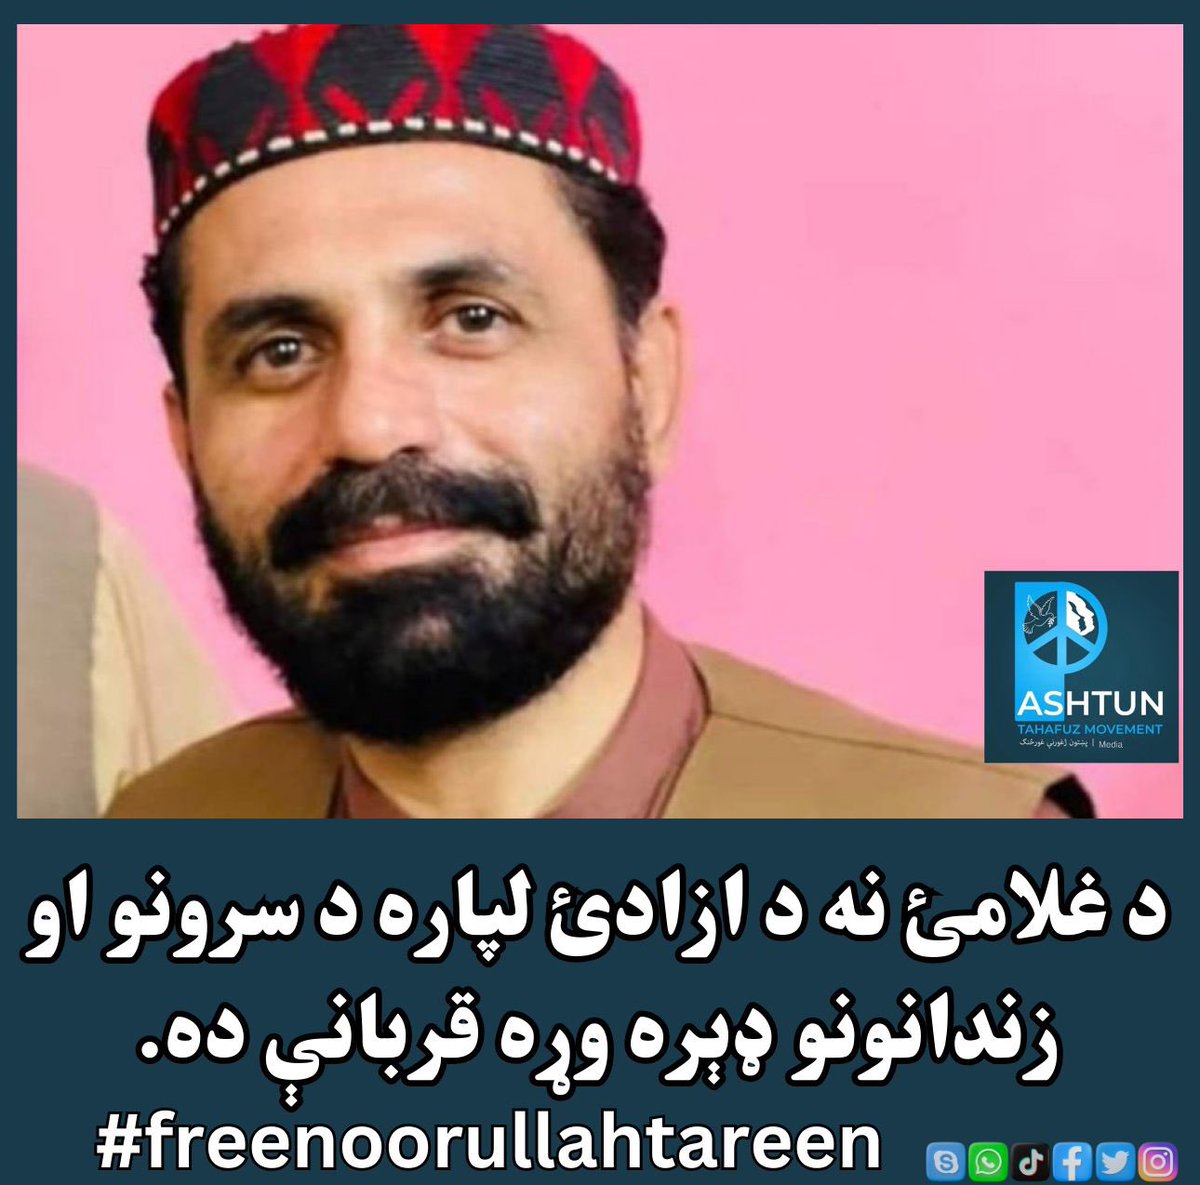 #FreeNoorullahTareen